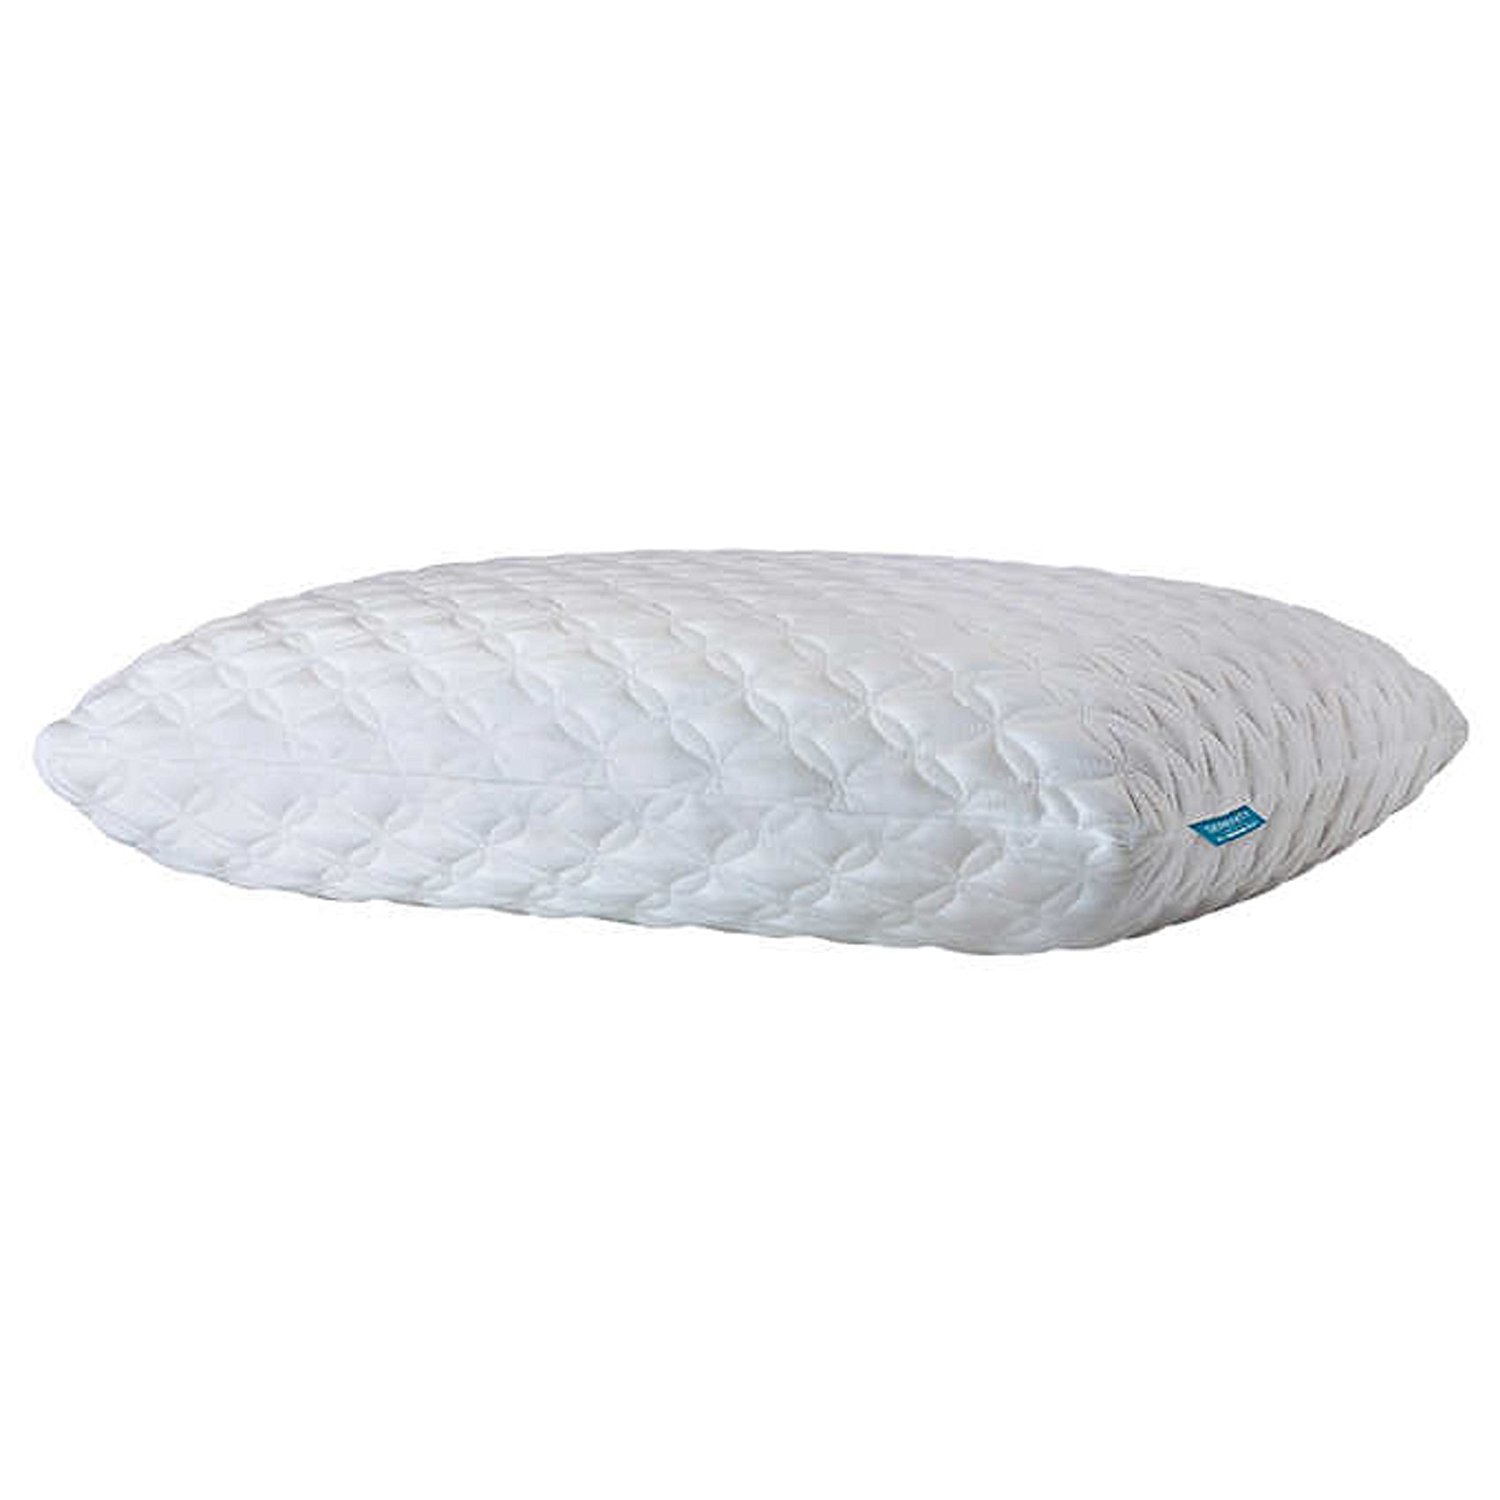 Review of Serenity by Tempur-Pedic Memory Foam Bed Pillow